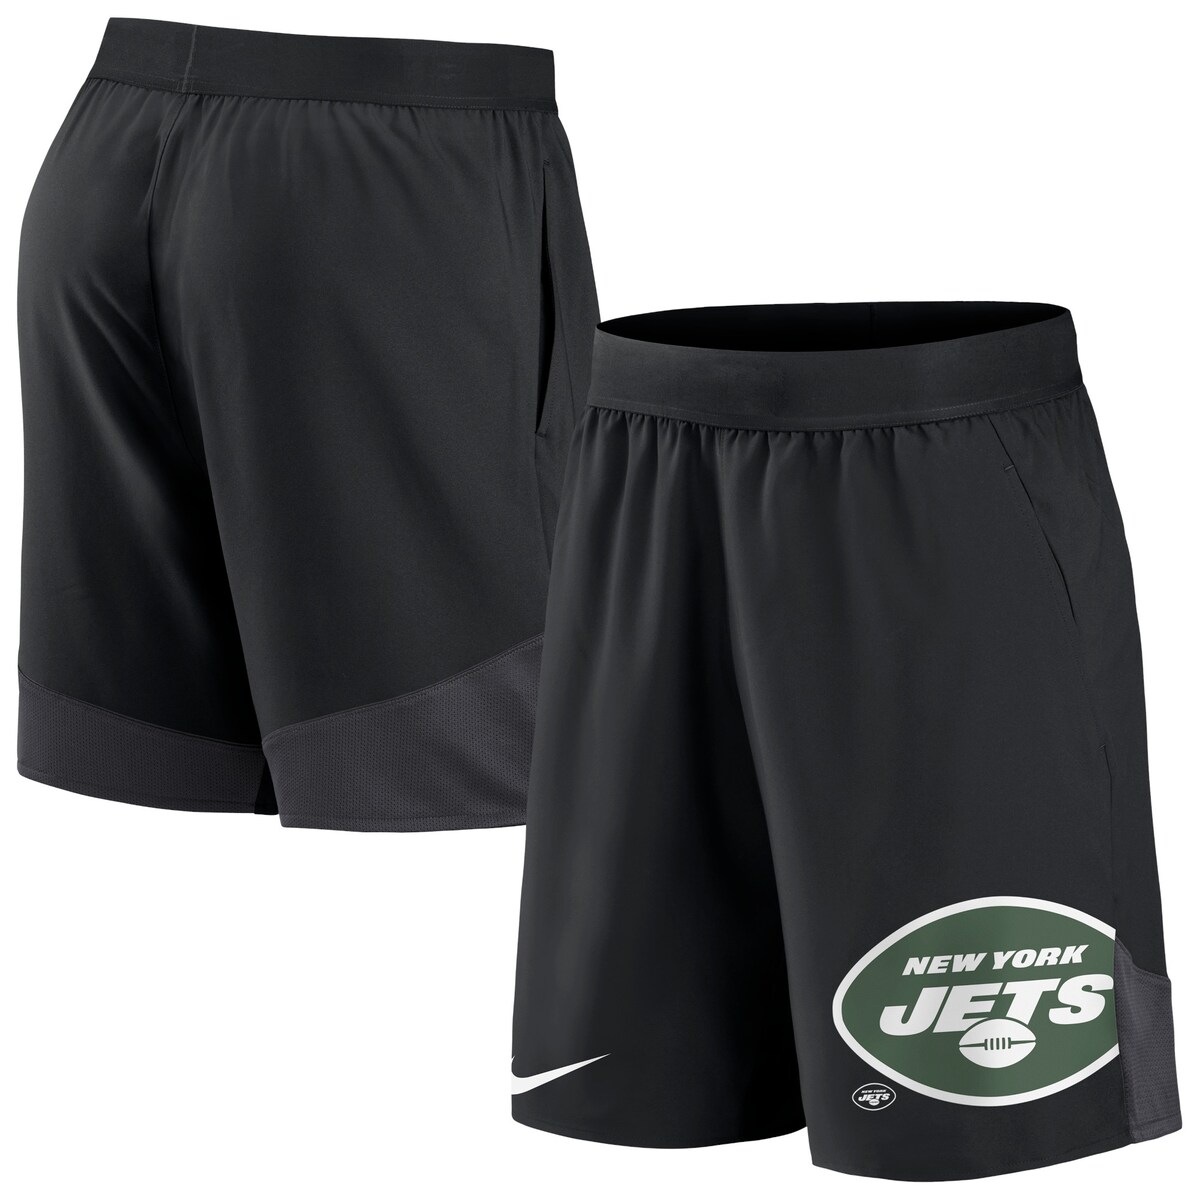 ナイキ ルームウェア メンズ NFL ジェッツ ショートパンツ Nike ナイキ メンズ ブラック (Men's NFL 23 Nike Stretch Woven Short)